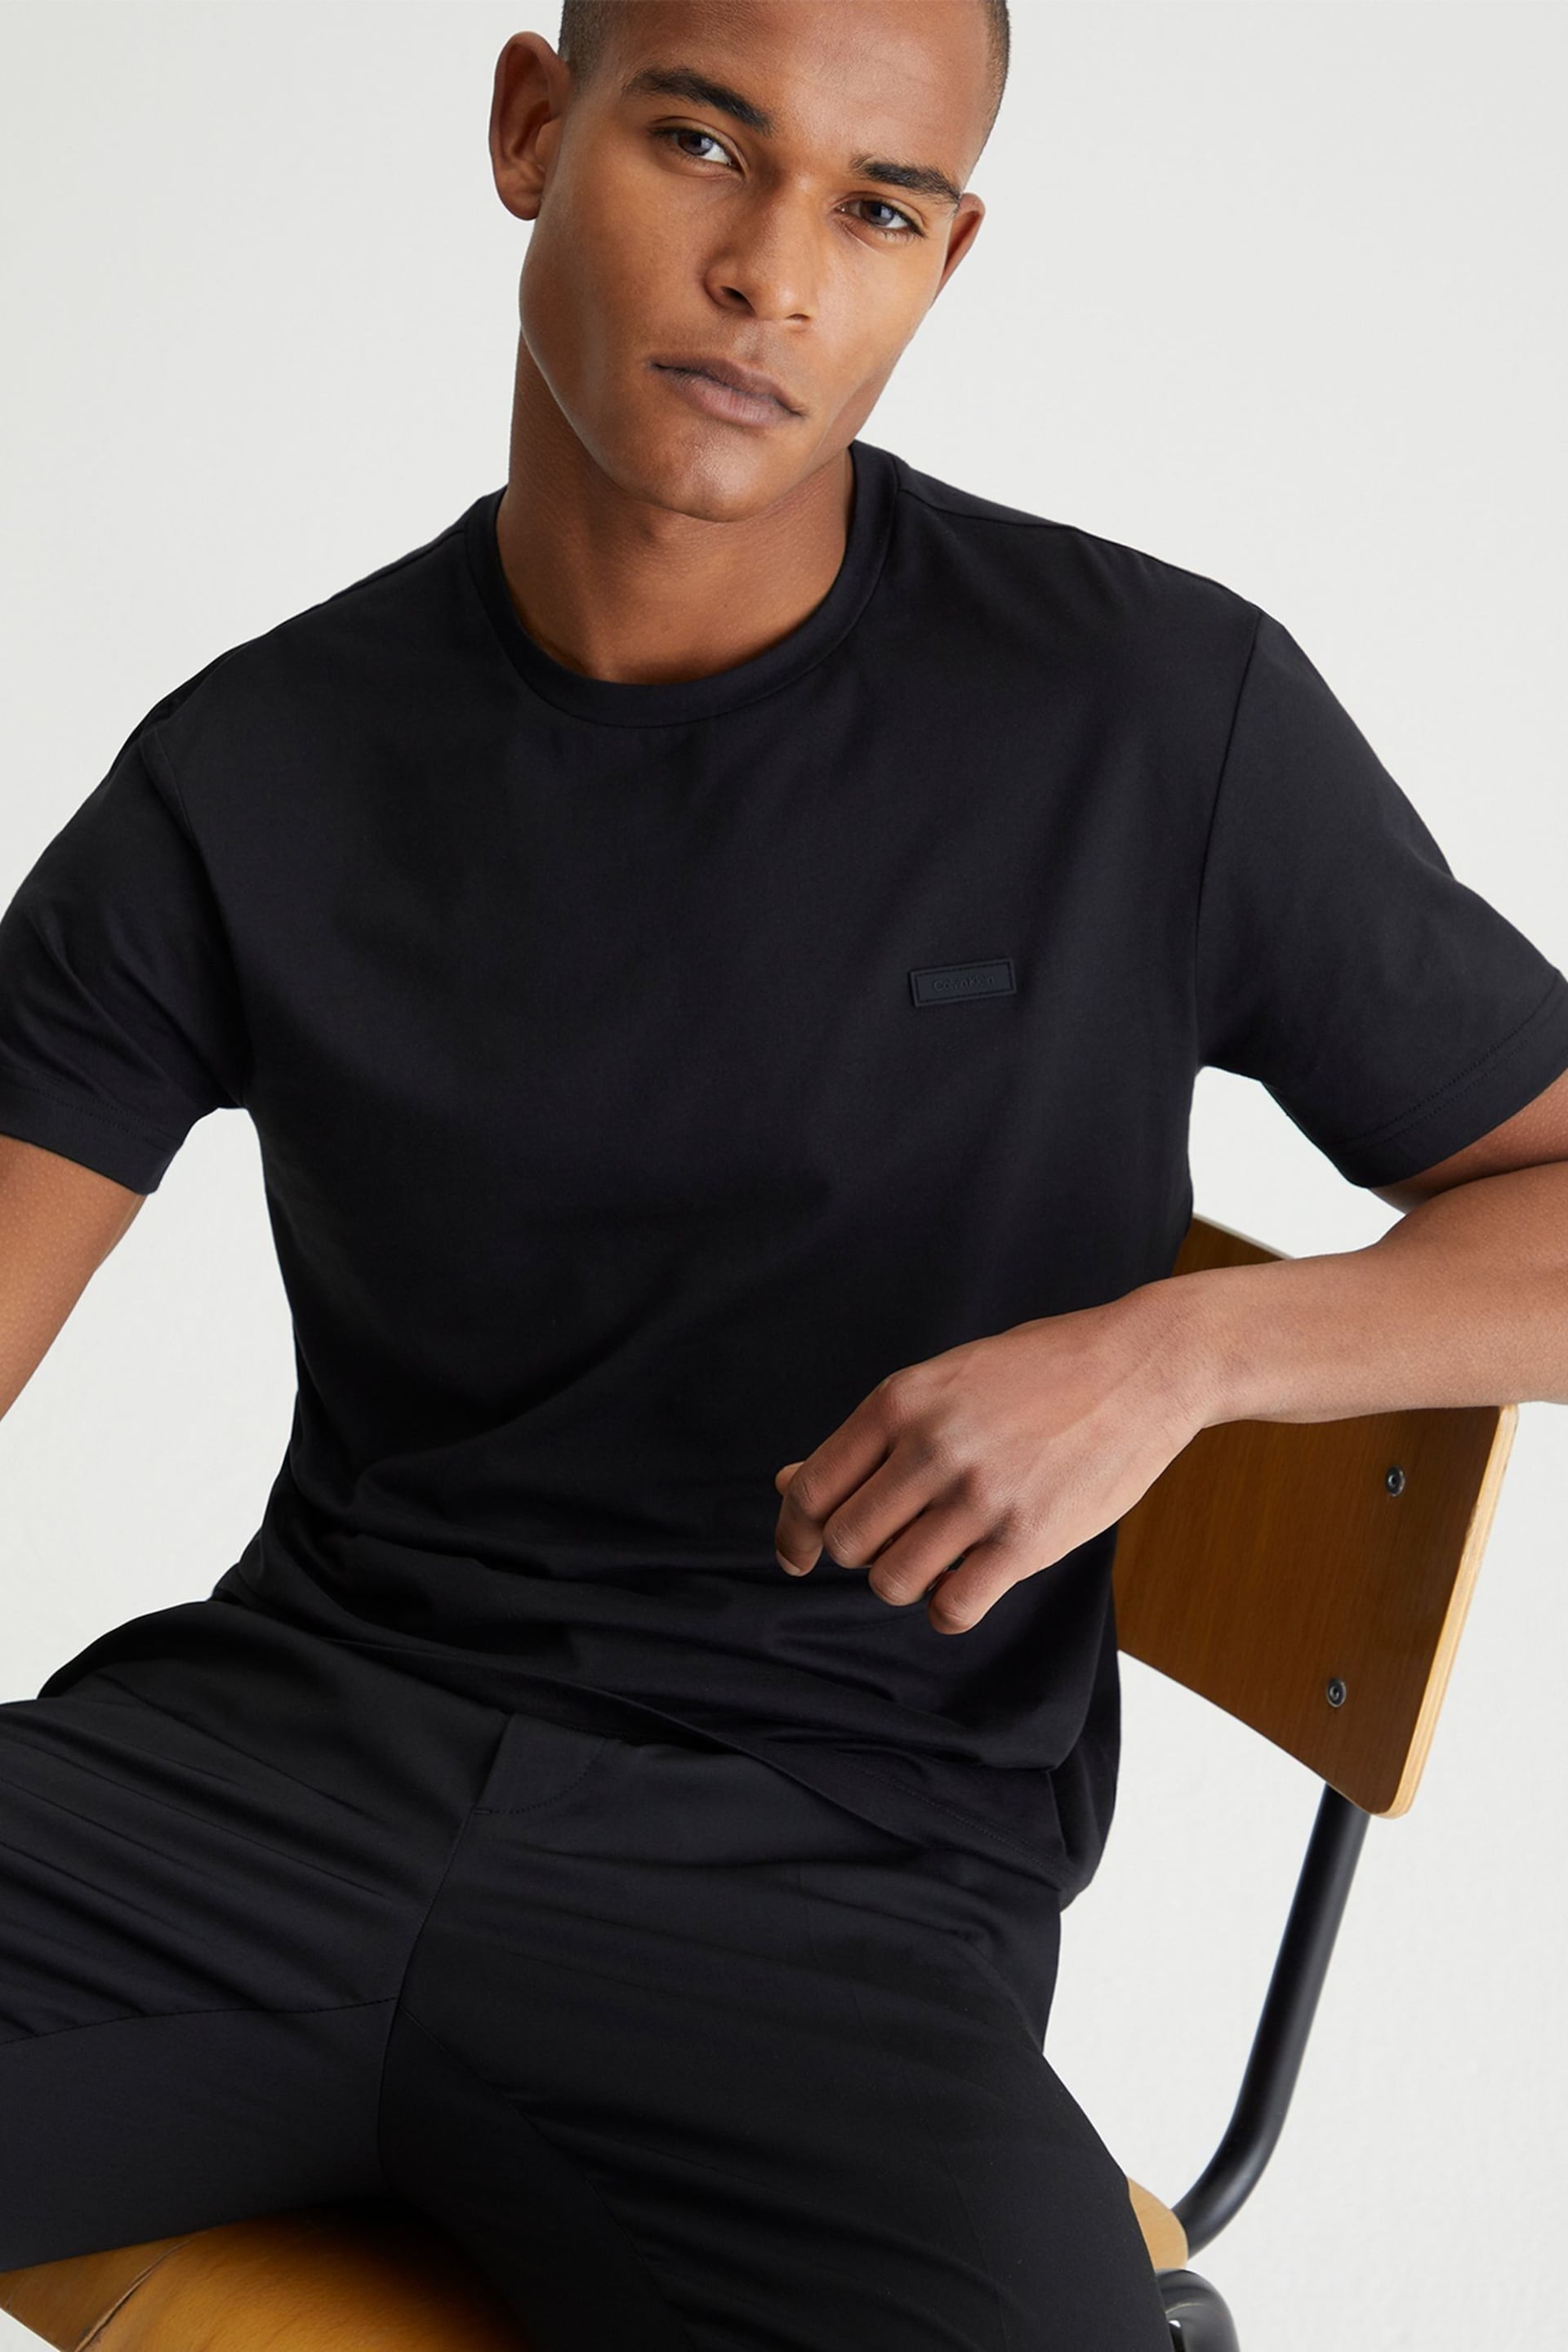 Calvin Klein Black Modern Essentials Cotton T-Shirt - Image 5 of 5